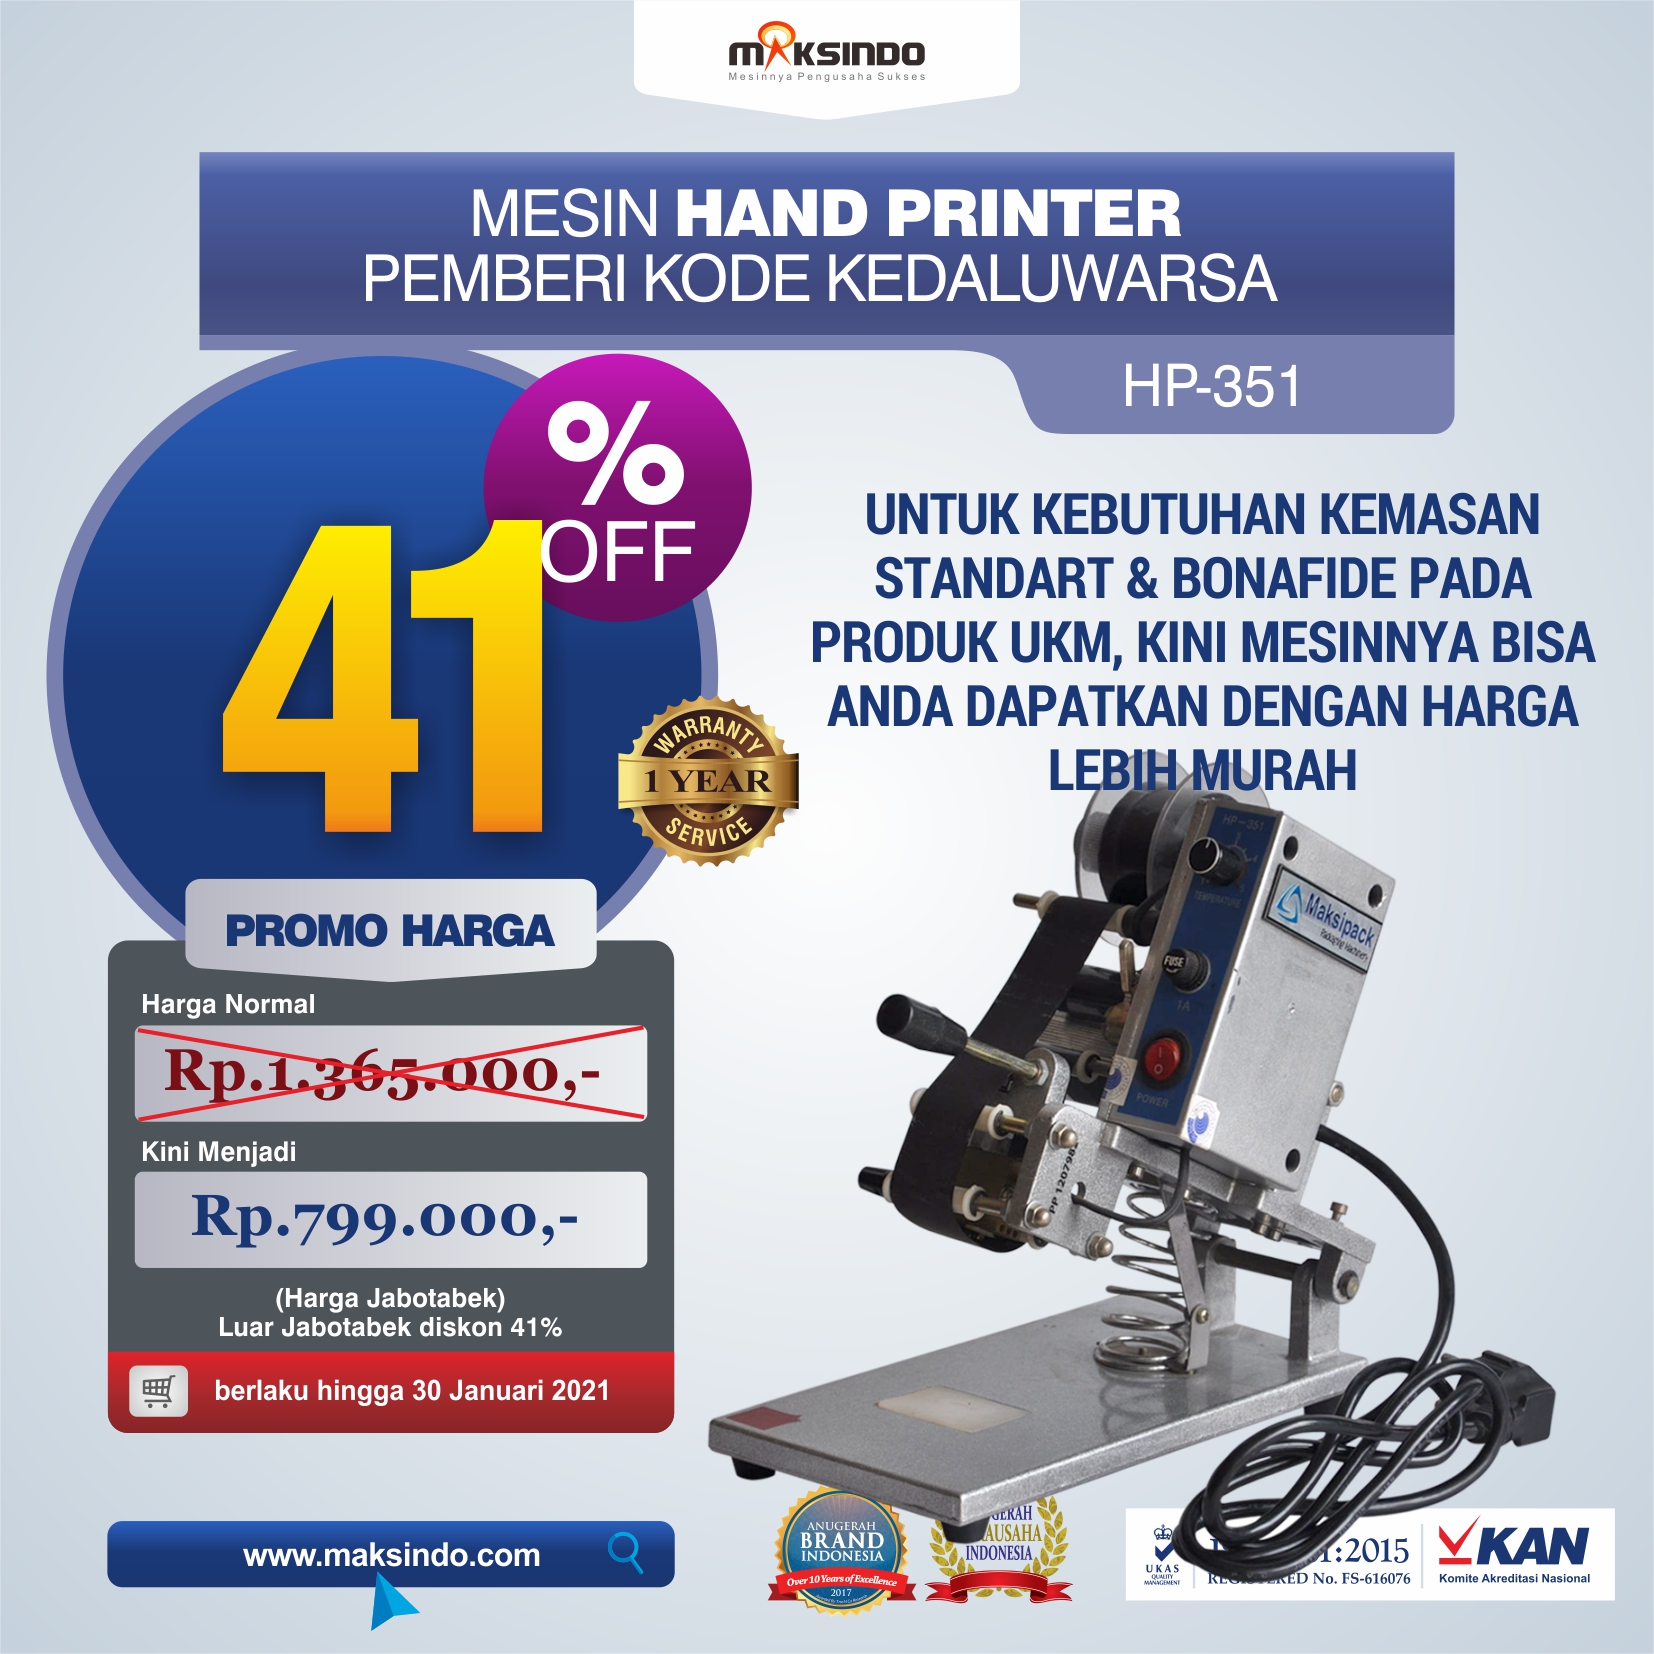 Jual Mesin Hand Printer (Pencetak Kedaluwarsa) di Yogyakarta